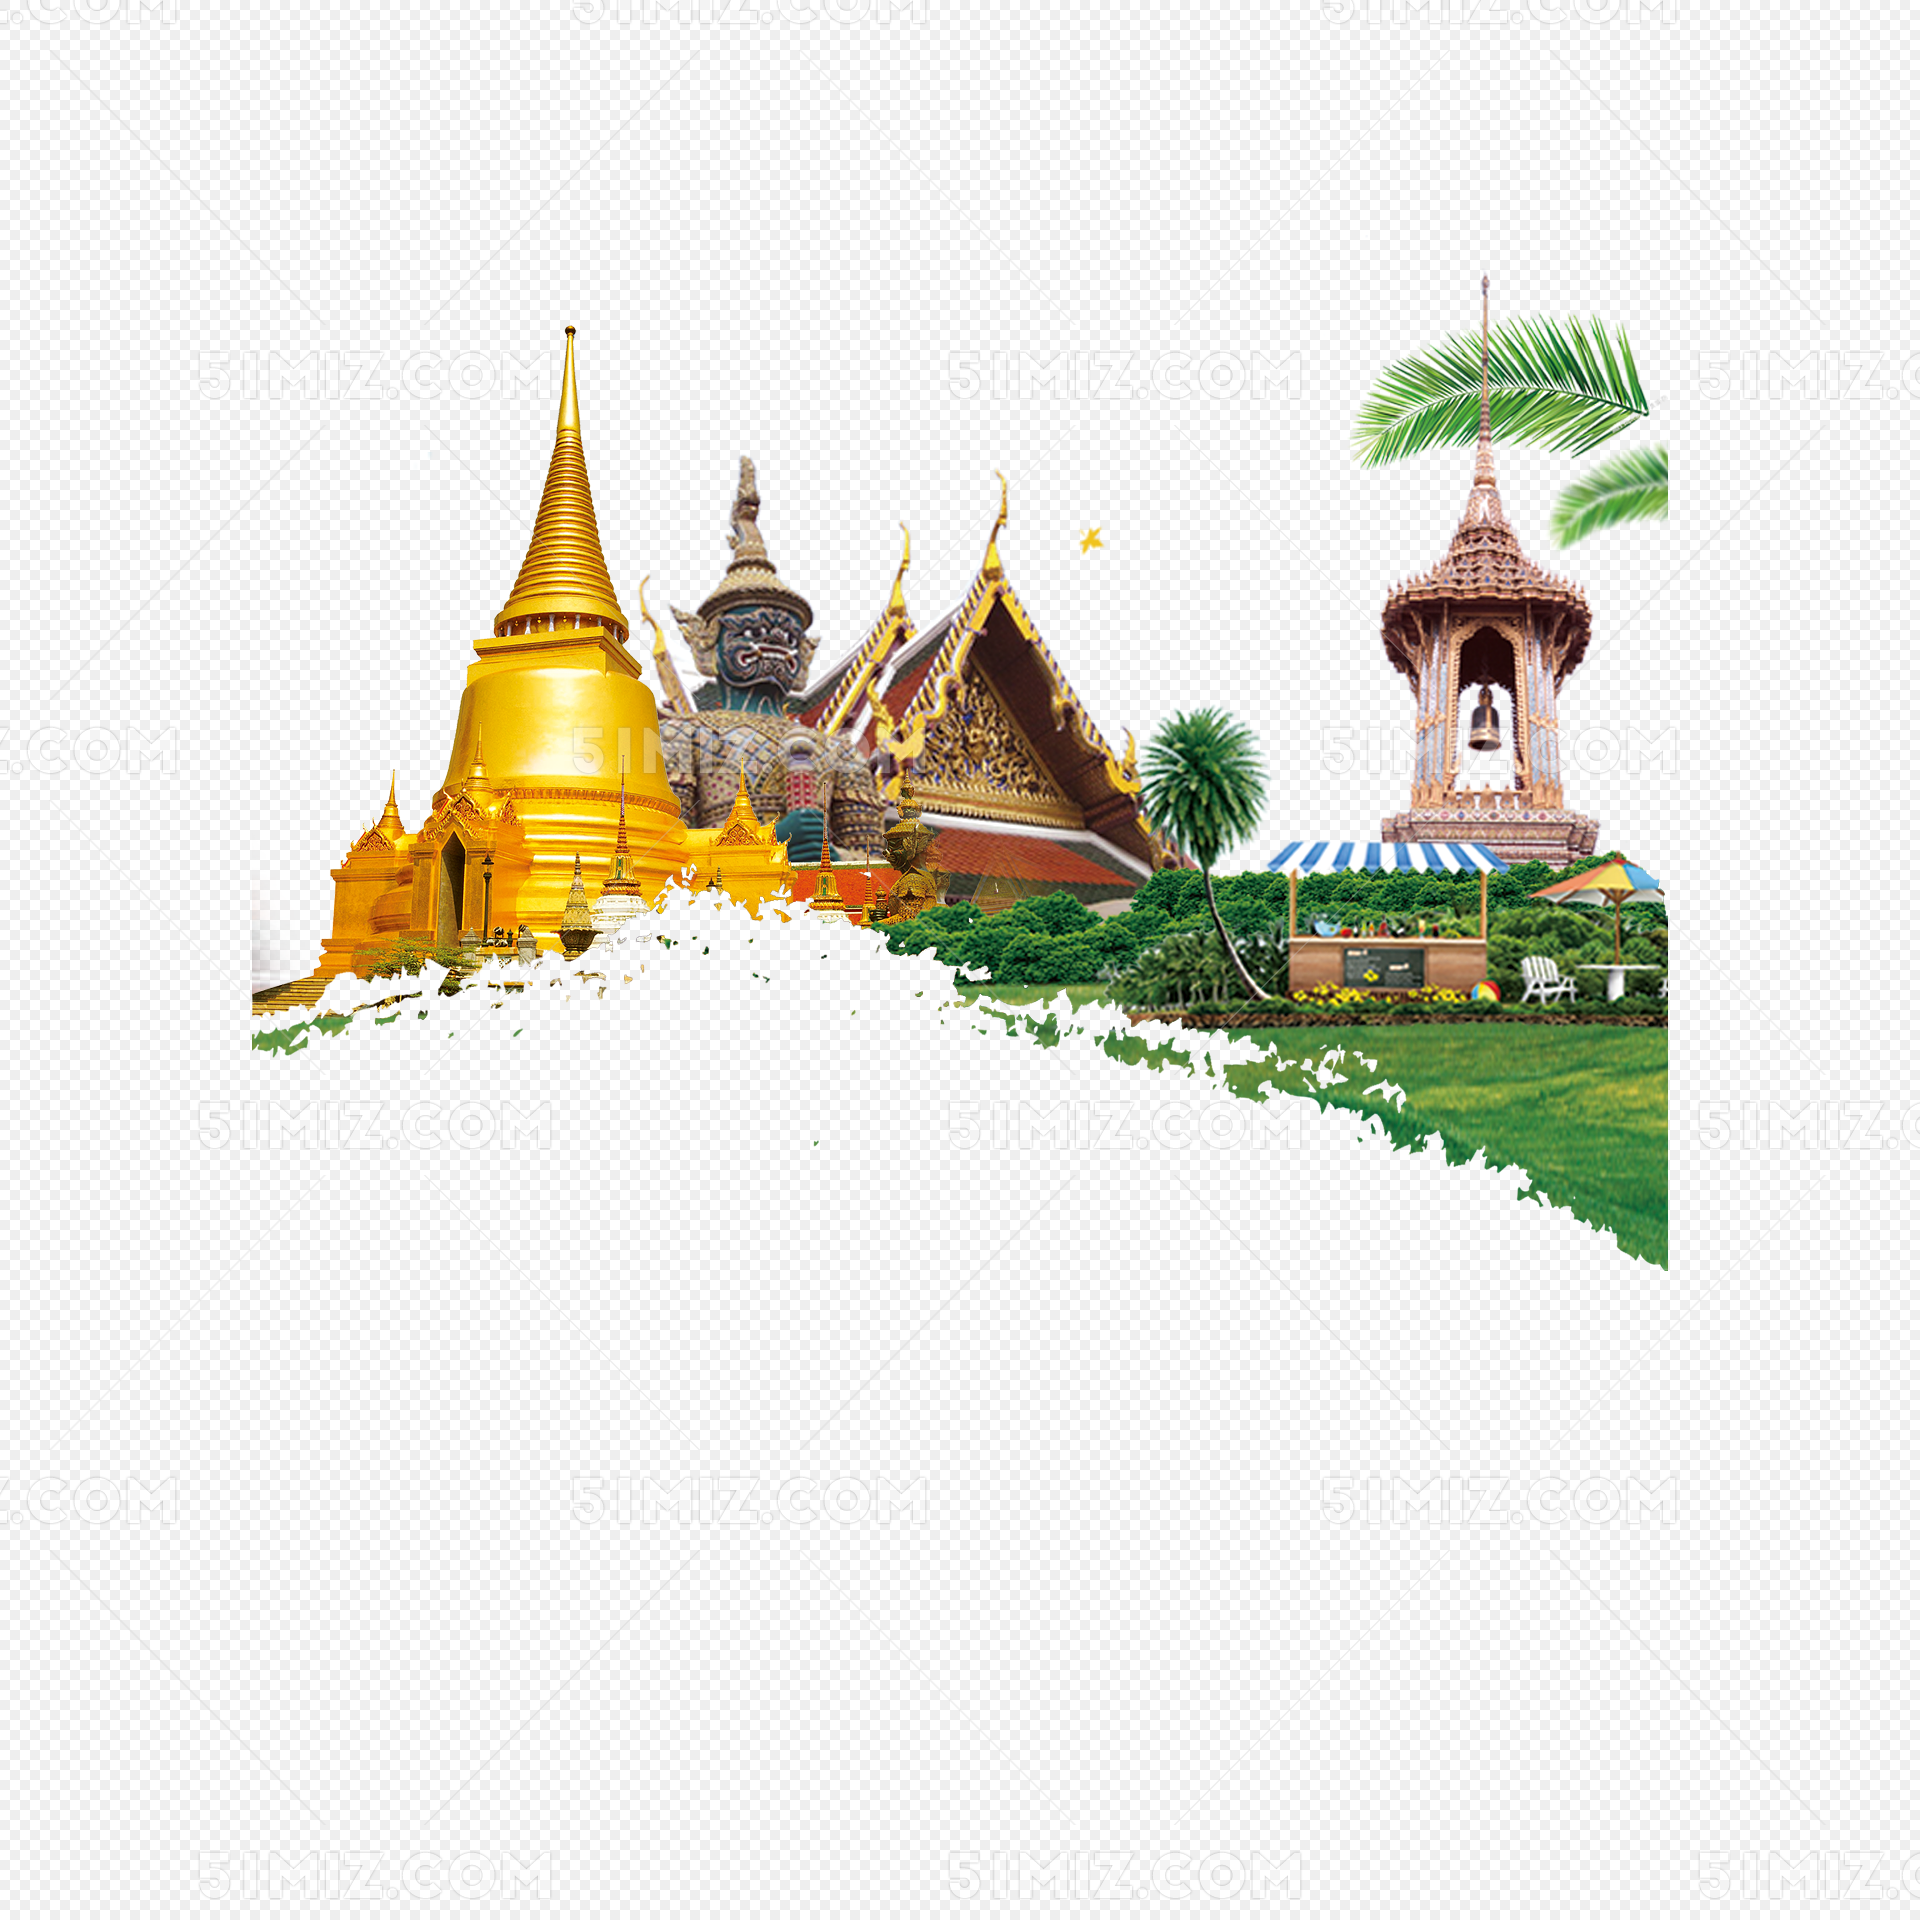 泰国 寺庙 版画 - Pixabay上的免费照片 - Pixabay